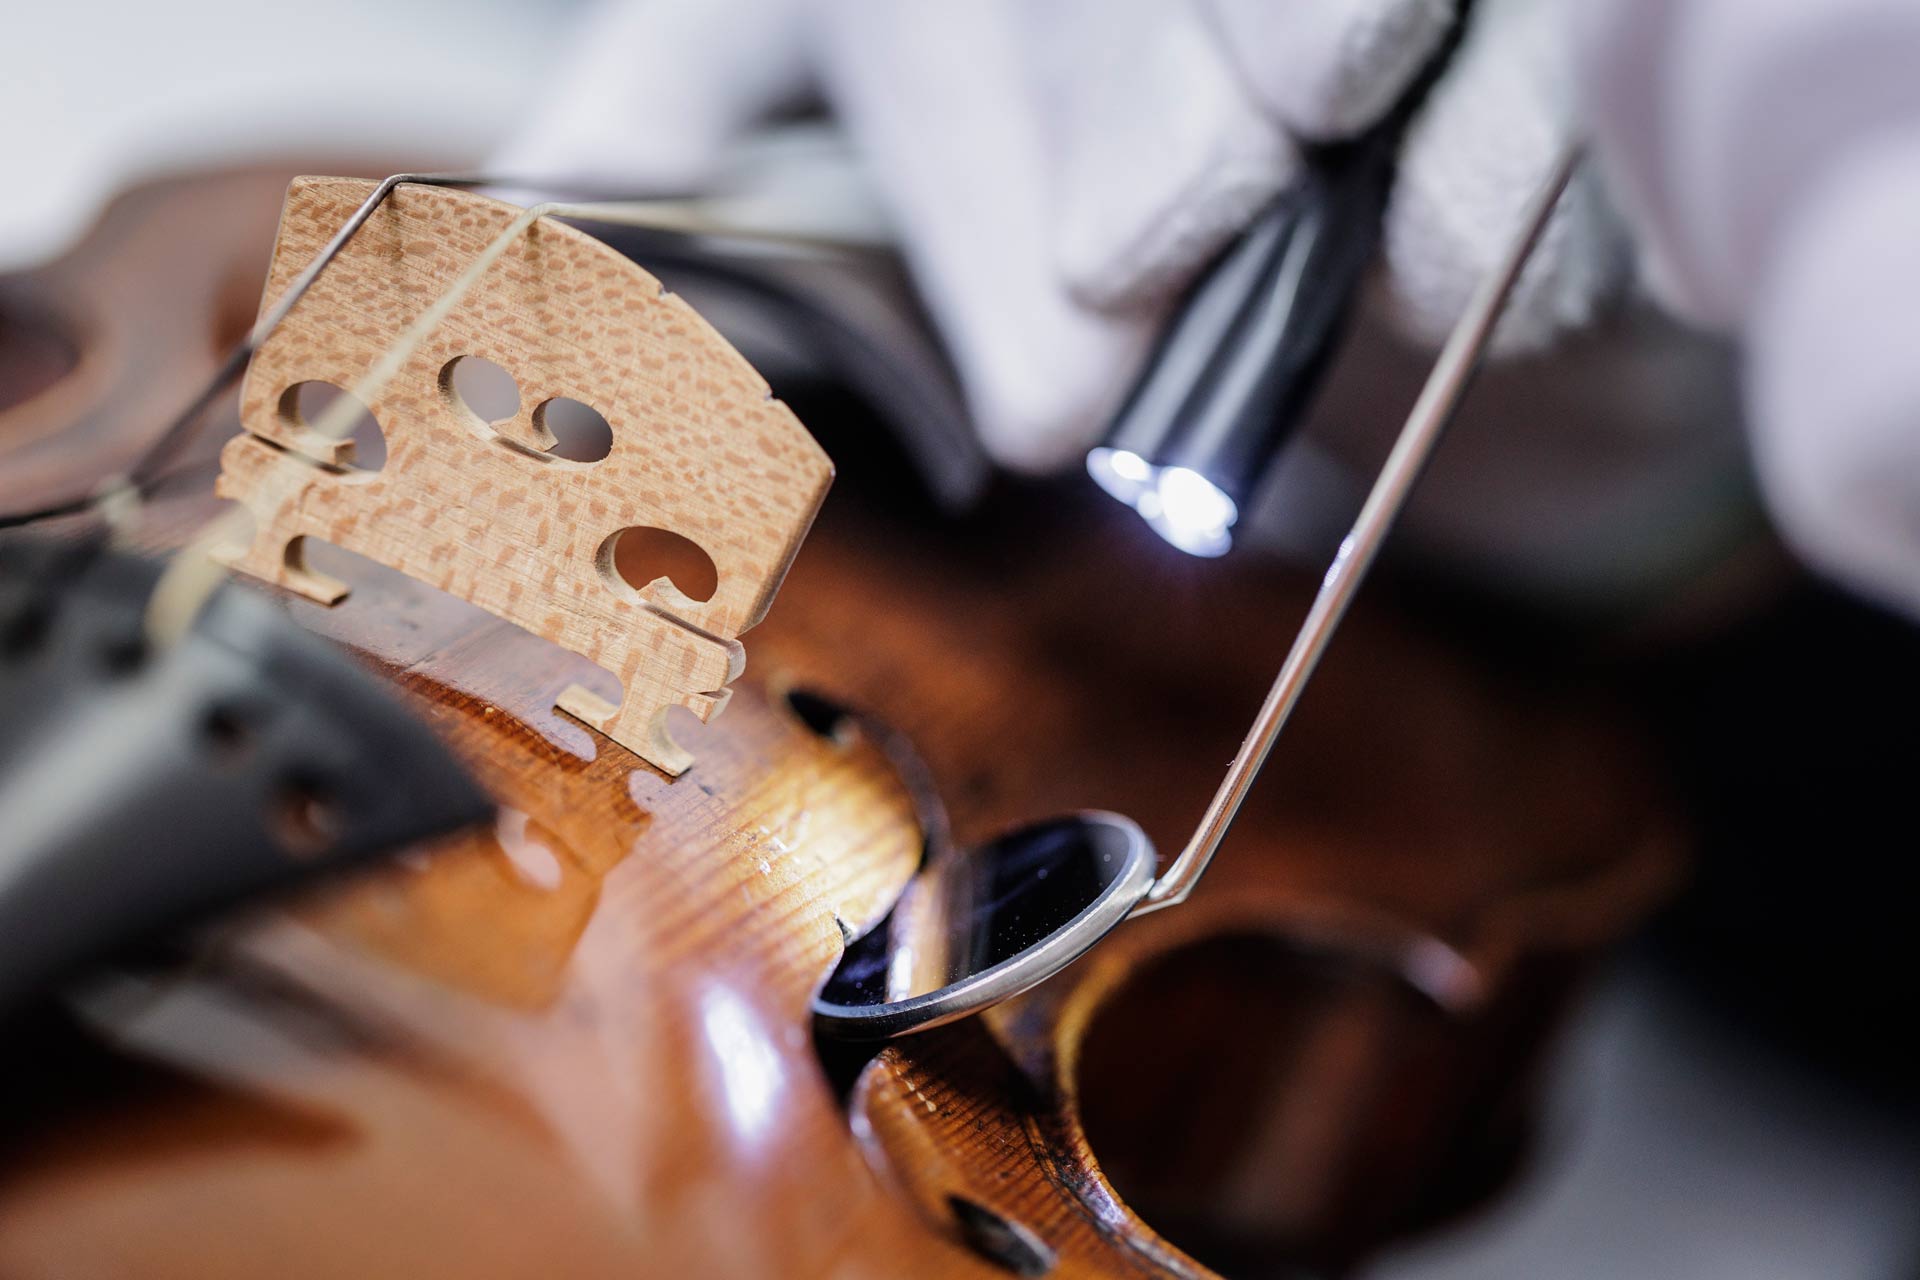 Detail einer Geige, zu sehen ist ein Untersuchungsspiegel und eine Taschenlampe